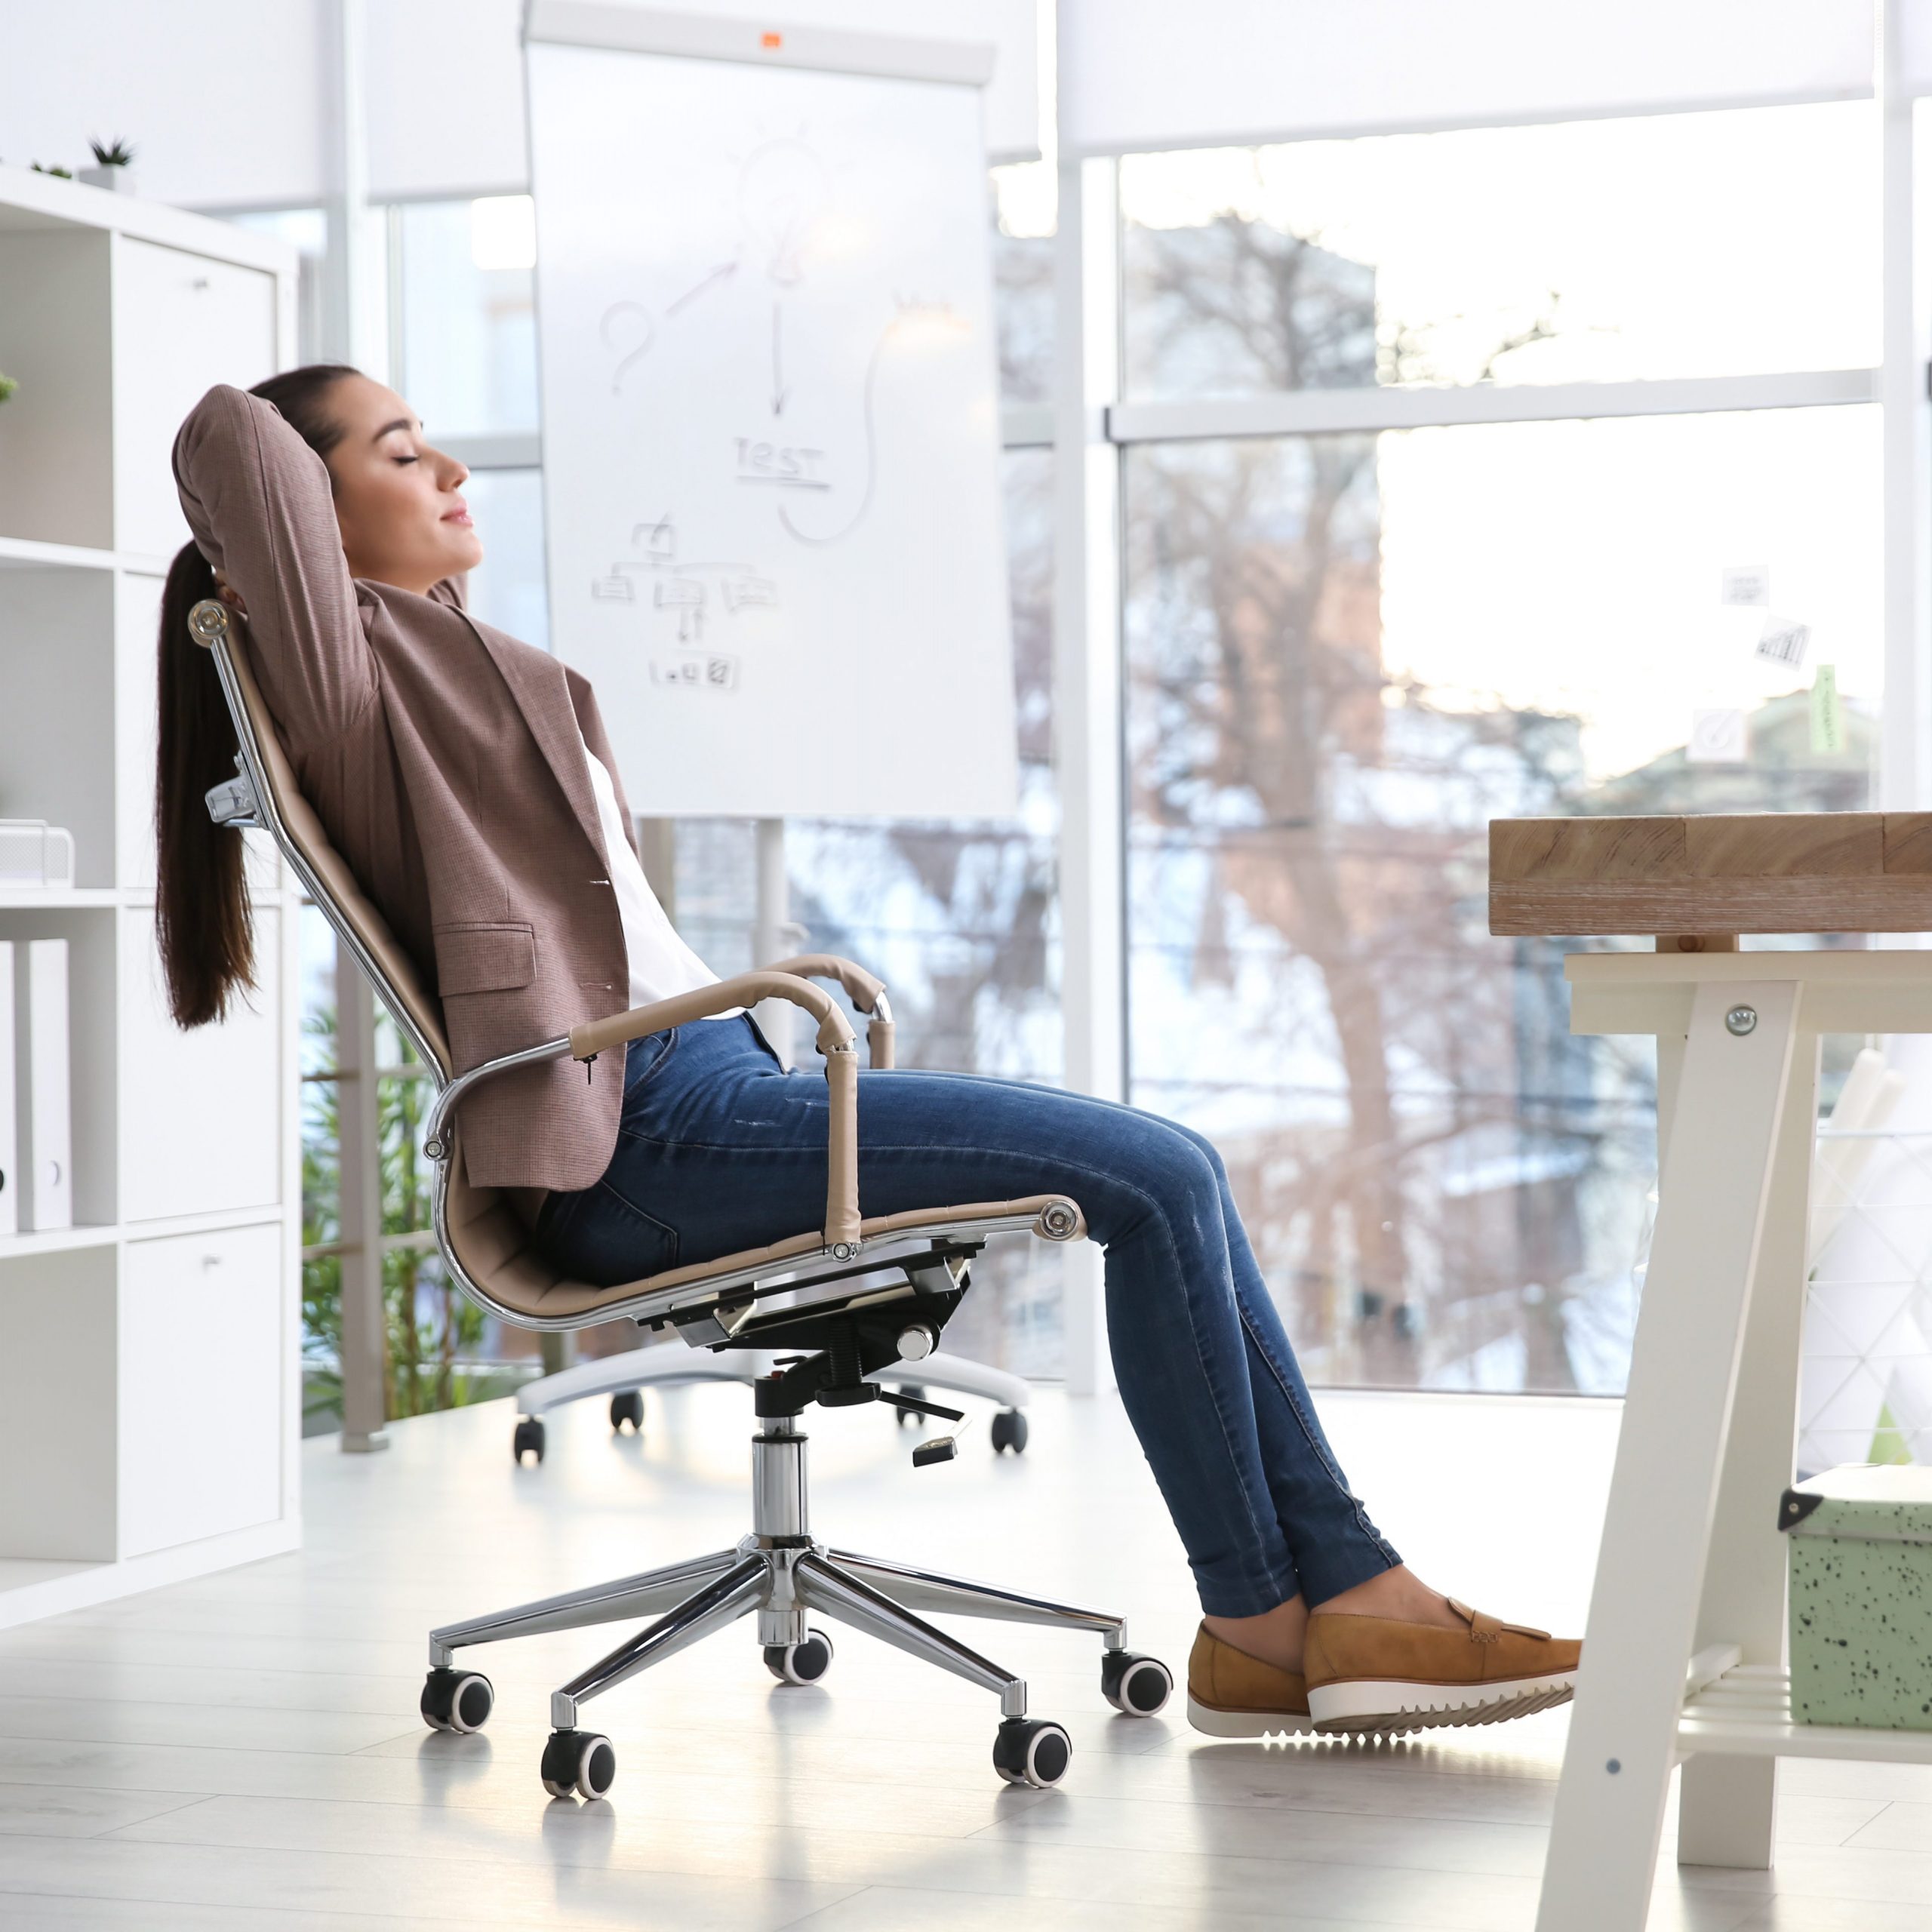 Eine Frau lehnt sich mit geschlossenen Augen entspannt ih ihrem Bürostuhl zurück.